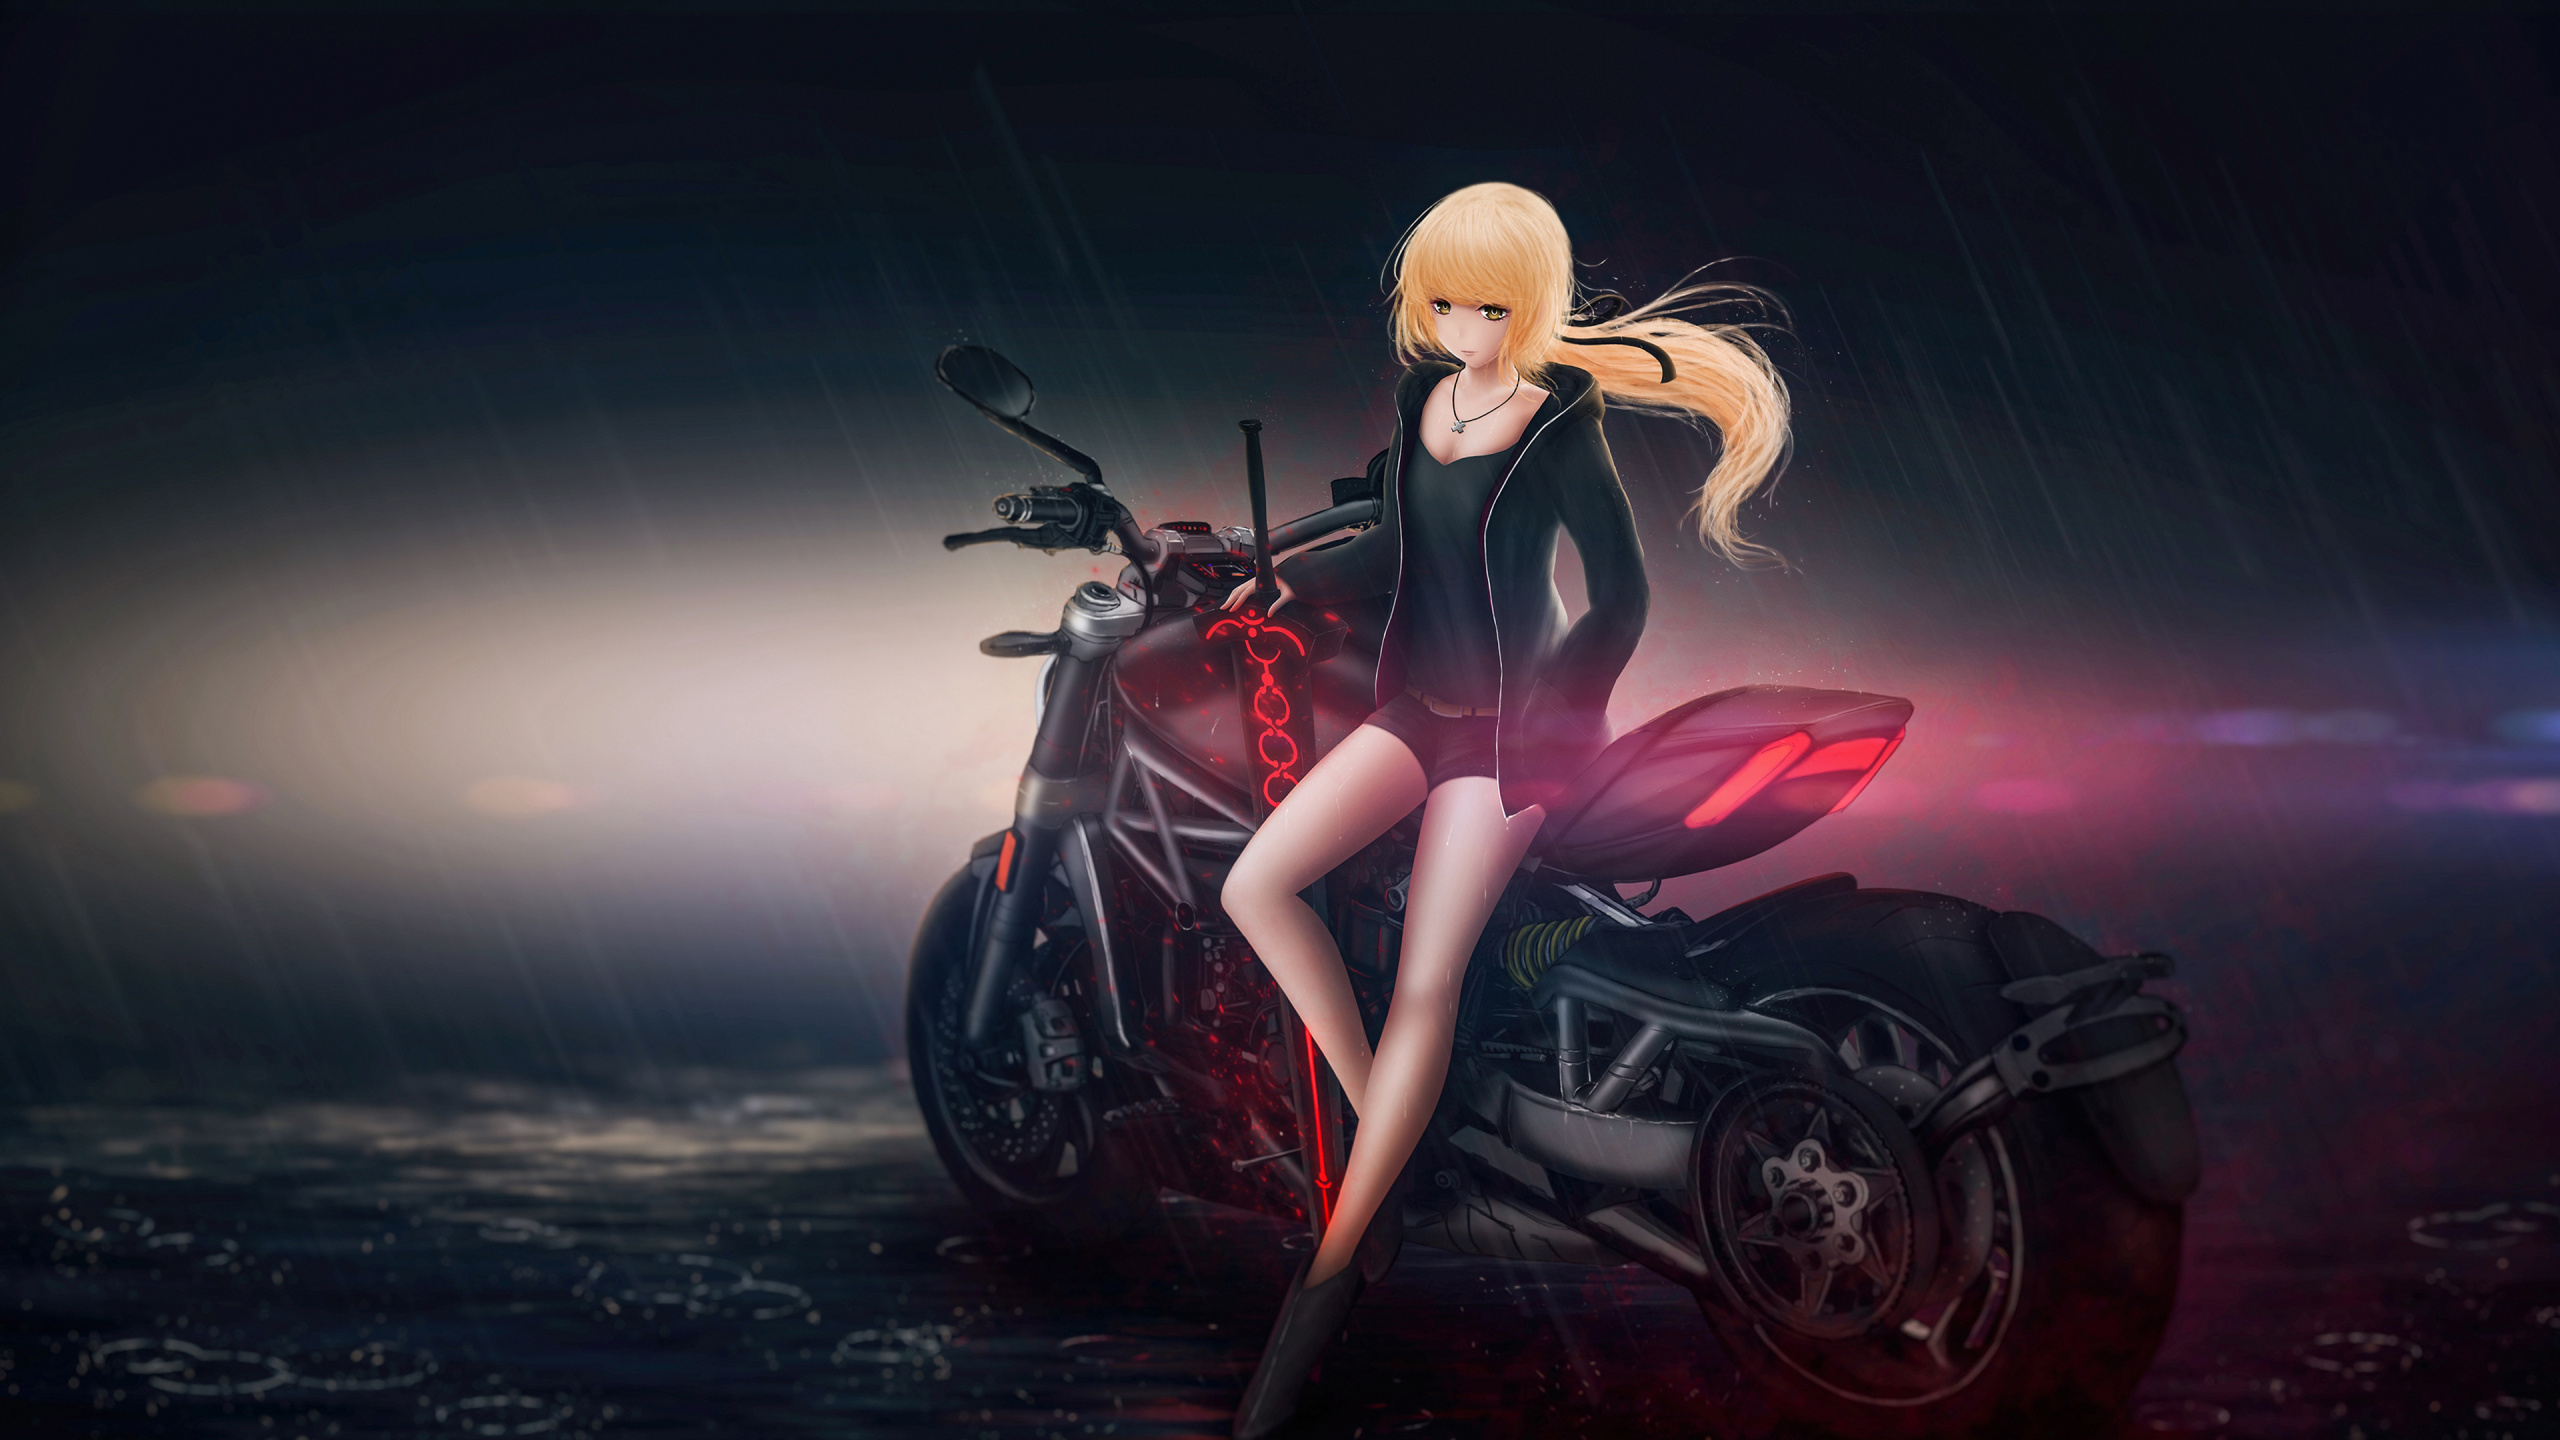 Femme en Noir et Rouge, Personnage D'anime de Vélo de Sport. Wallpaper in 2560x1440 Resolution